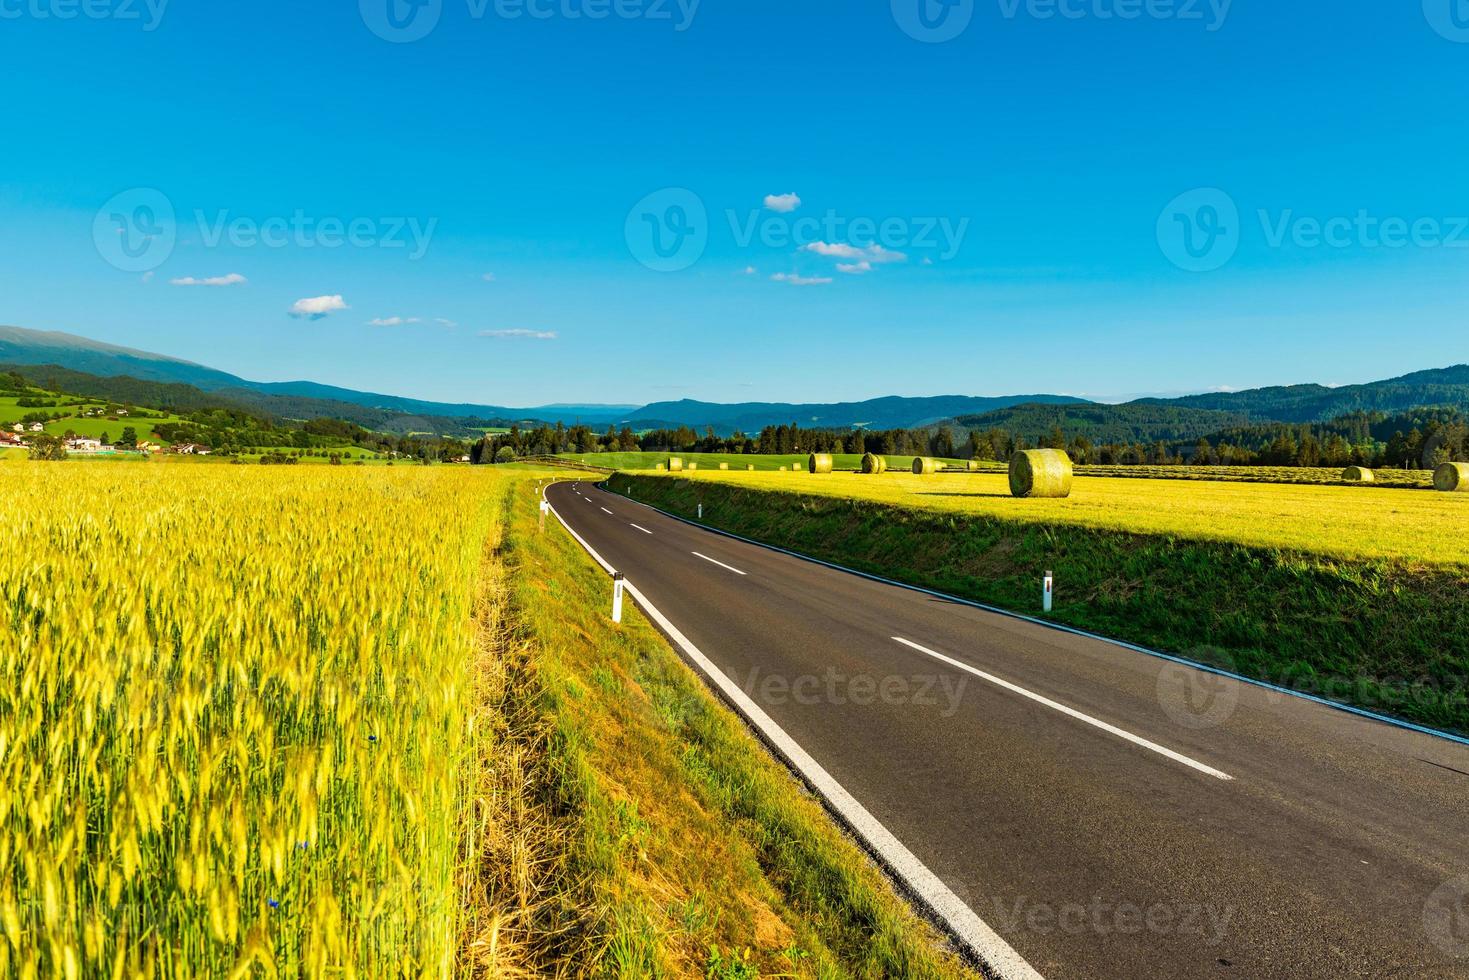 eine leere Straße zwischen landwirtschaftlichen Feldern, die in die Berge führt. österreichische ländliche landschaft foto